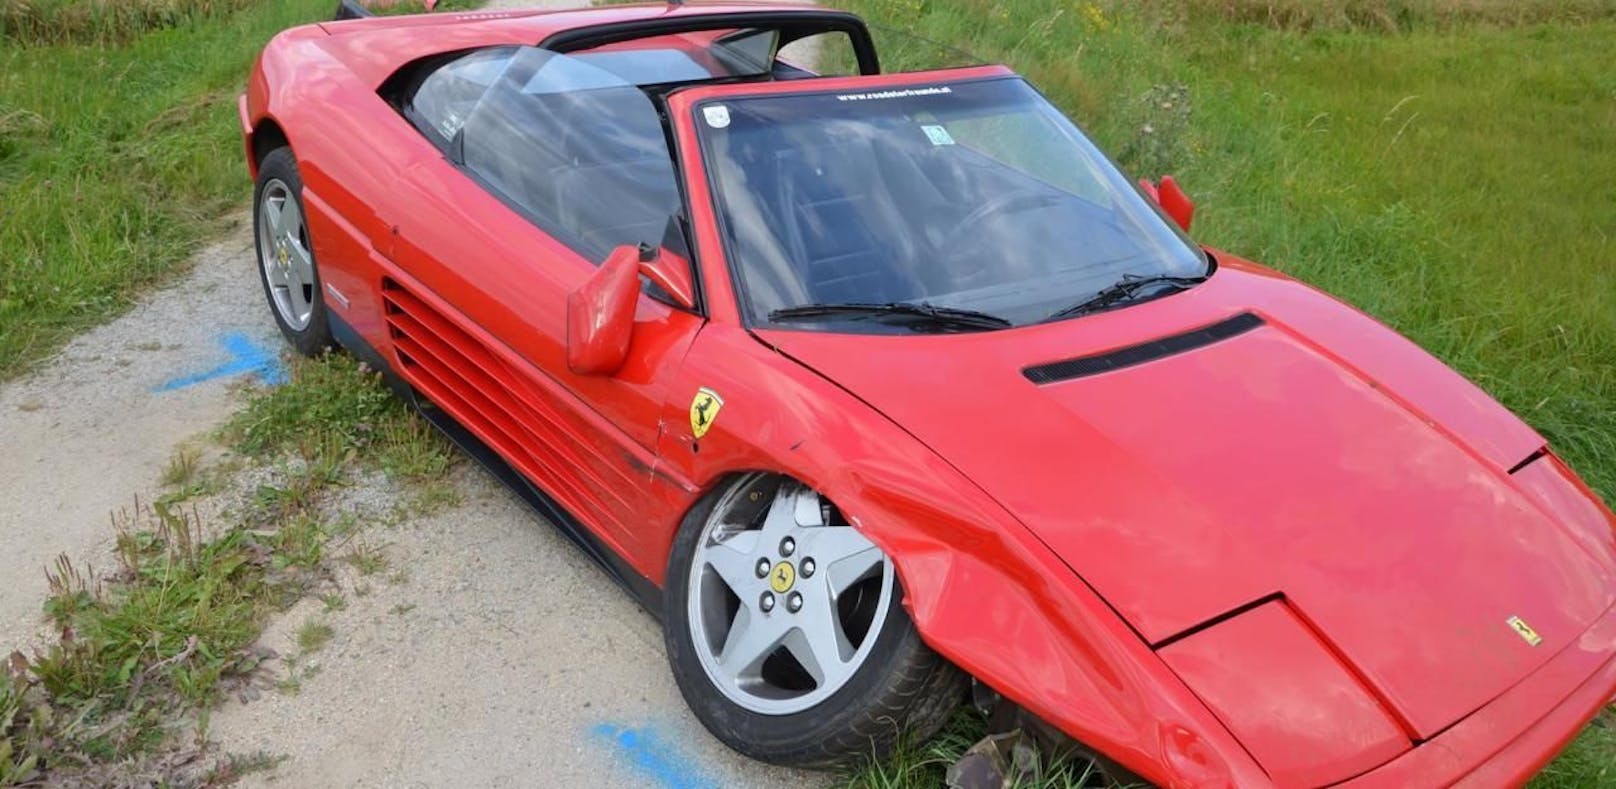 Unfall mit drei Pkw: Ferrari schwer beschädigt